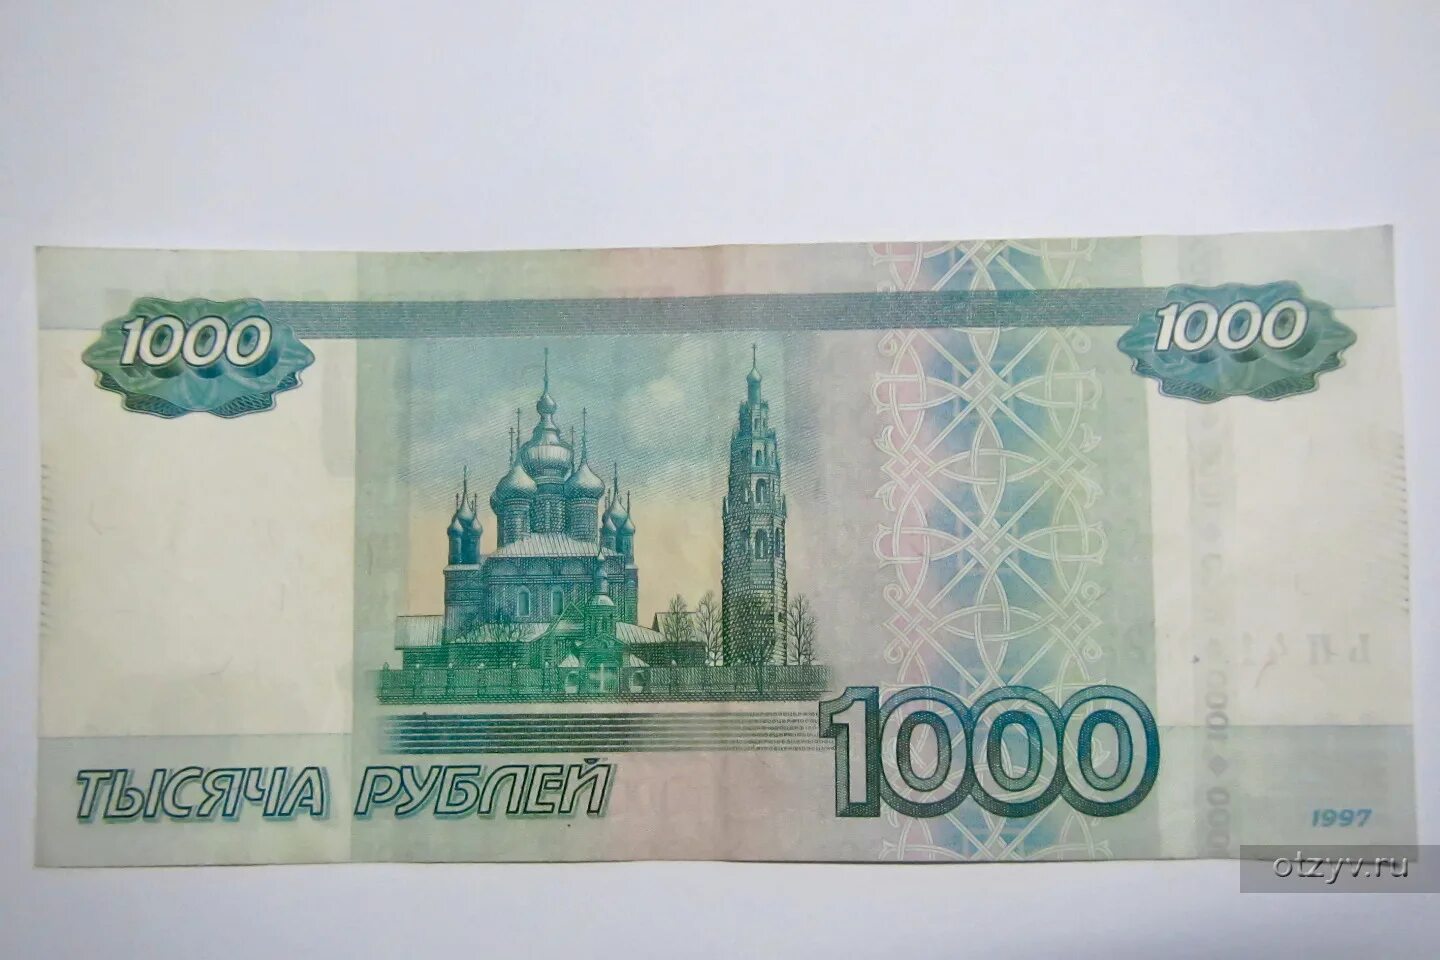 21 1000 рублей. 1000 Рублей 1997. Купюра 1000 рублей. Тысяча рублей 1997. 1000 Рублей 1997г.